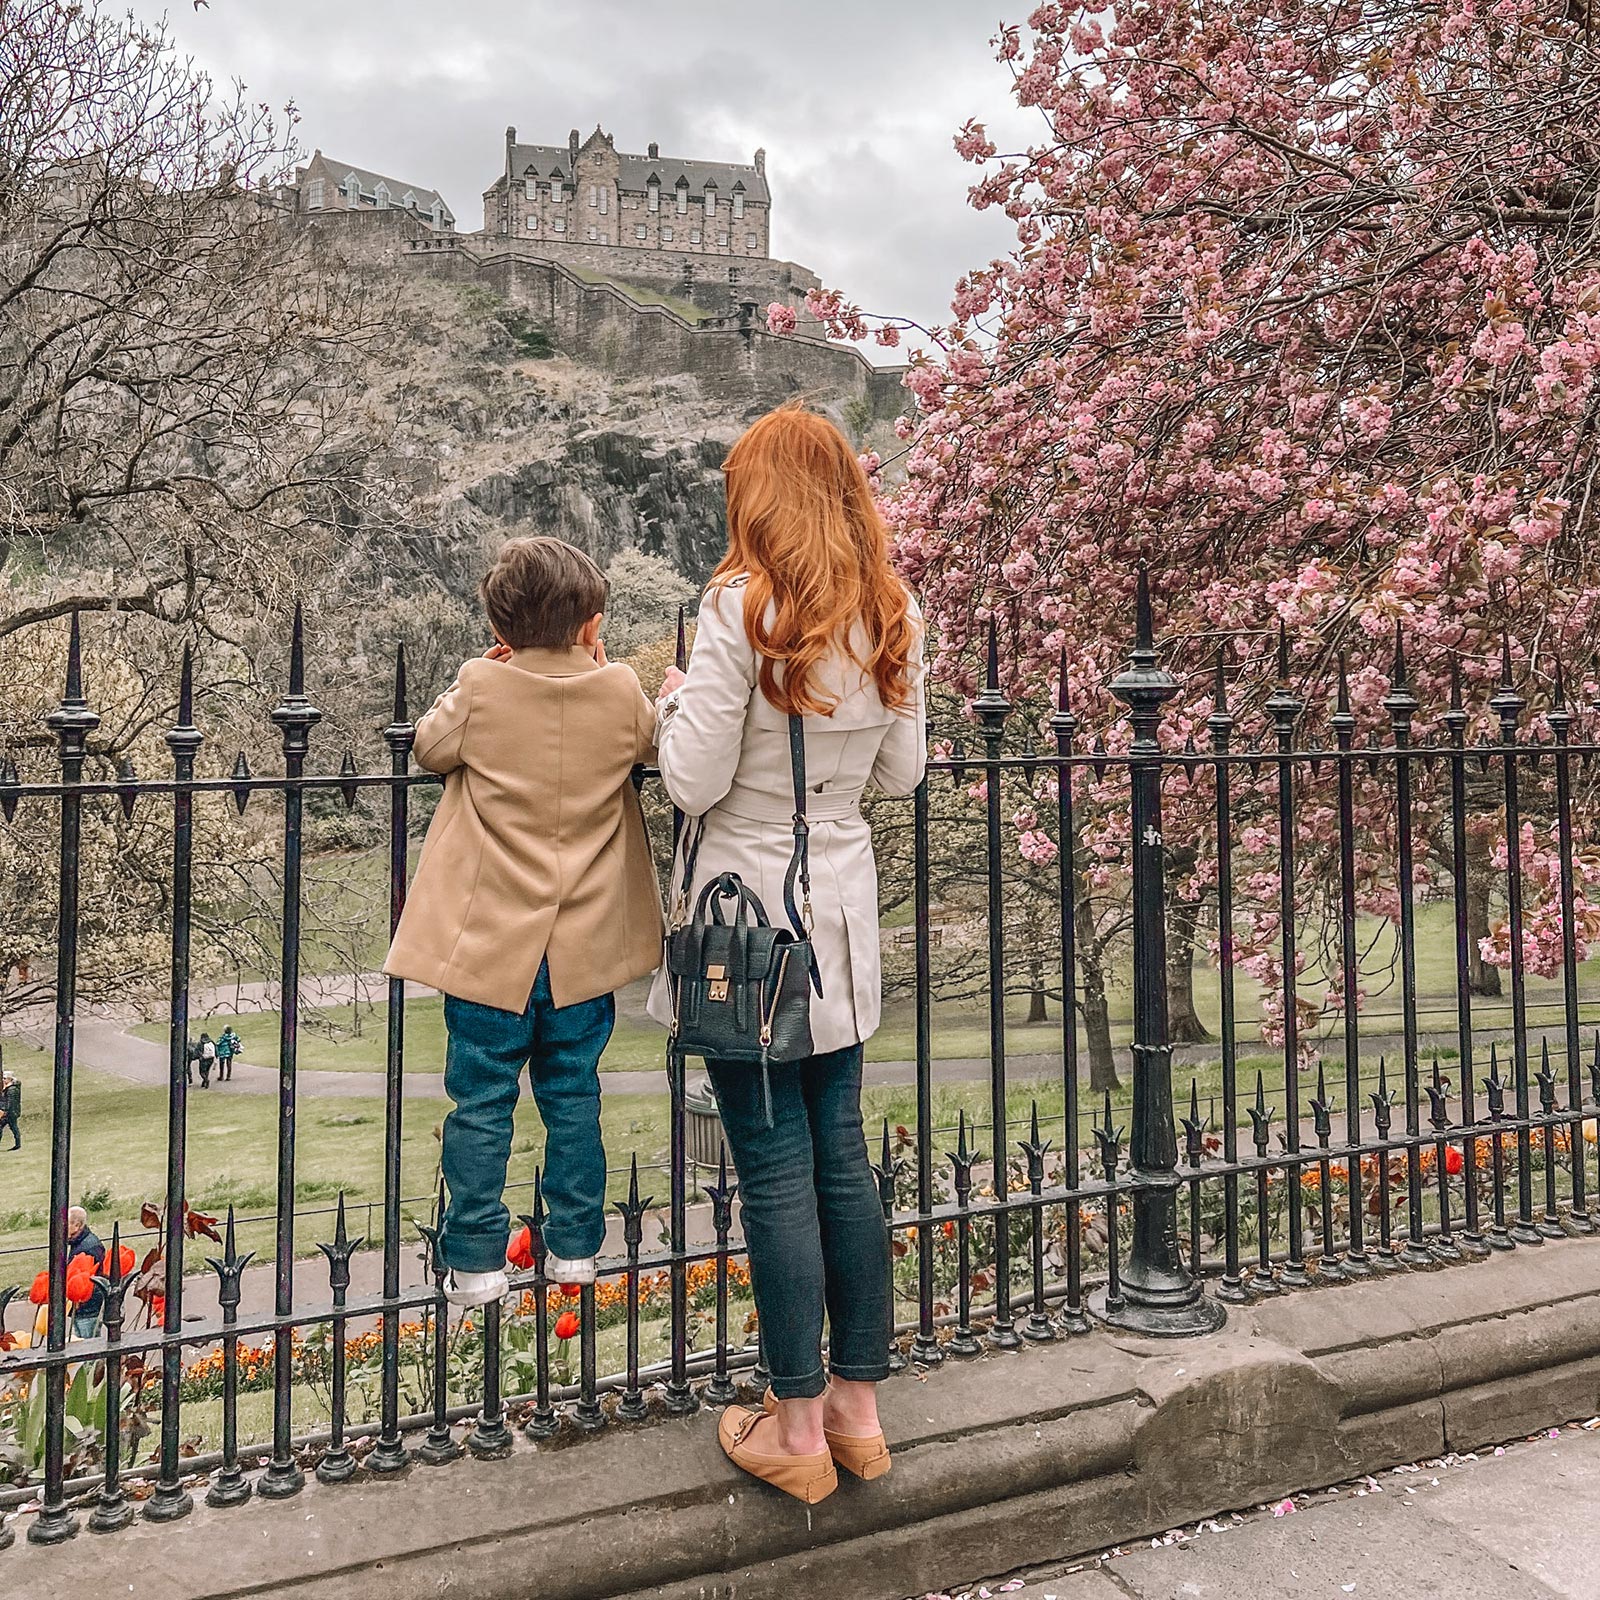 Edinburgh Castle in the spring